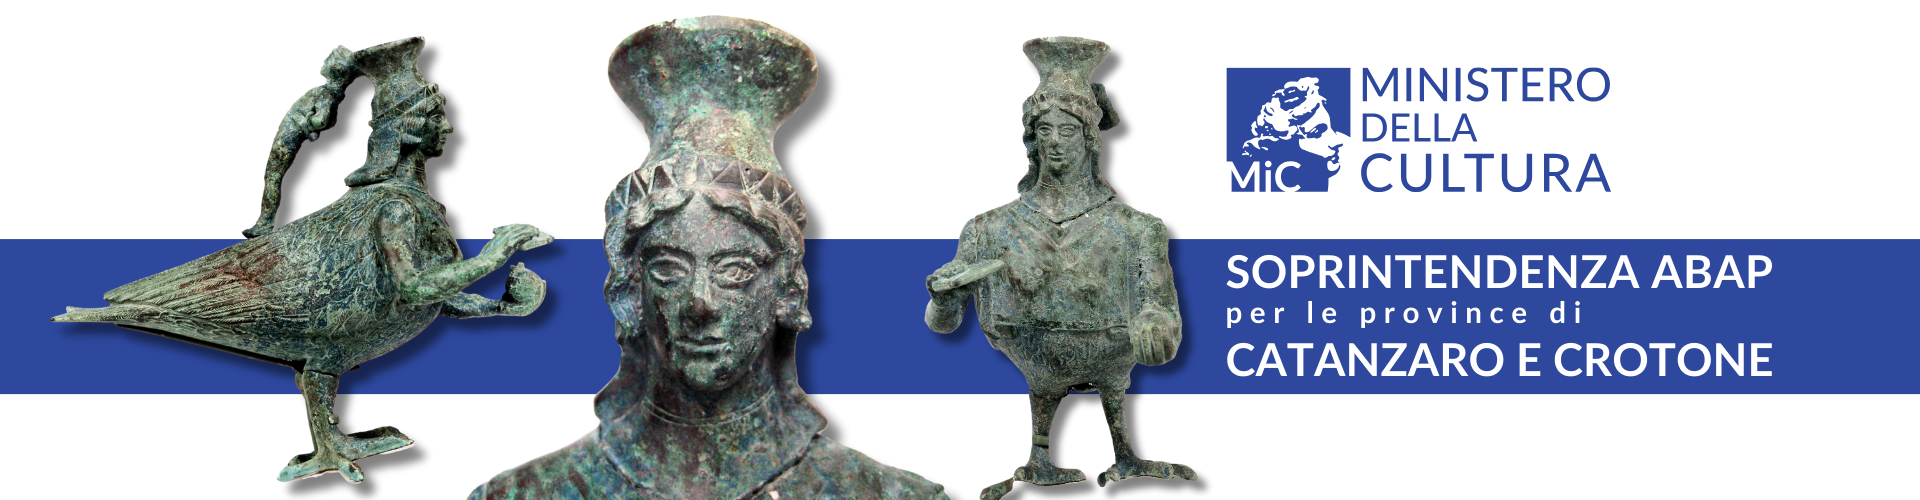 Askos, unguentario in bronzo del V secolo a.C. - Crotone (KR)